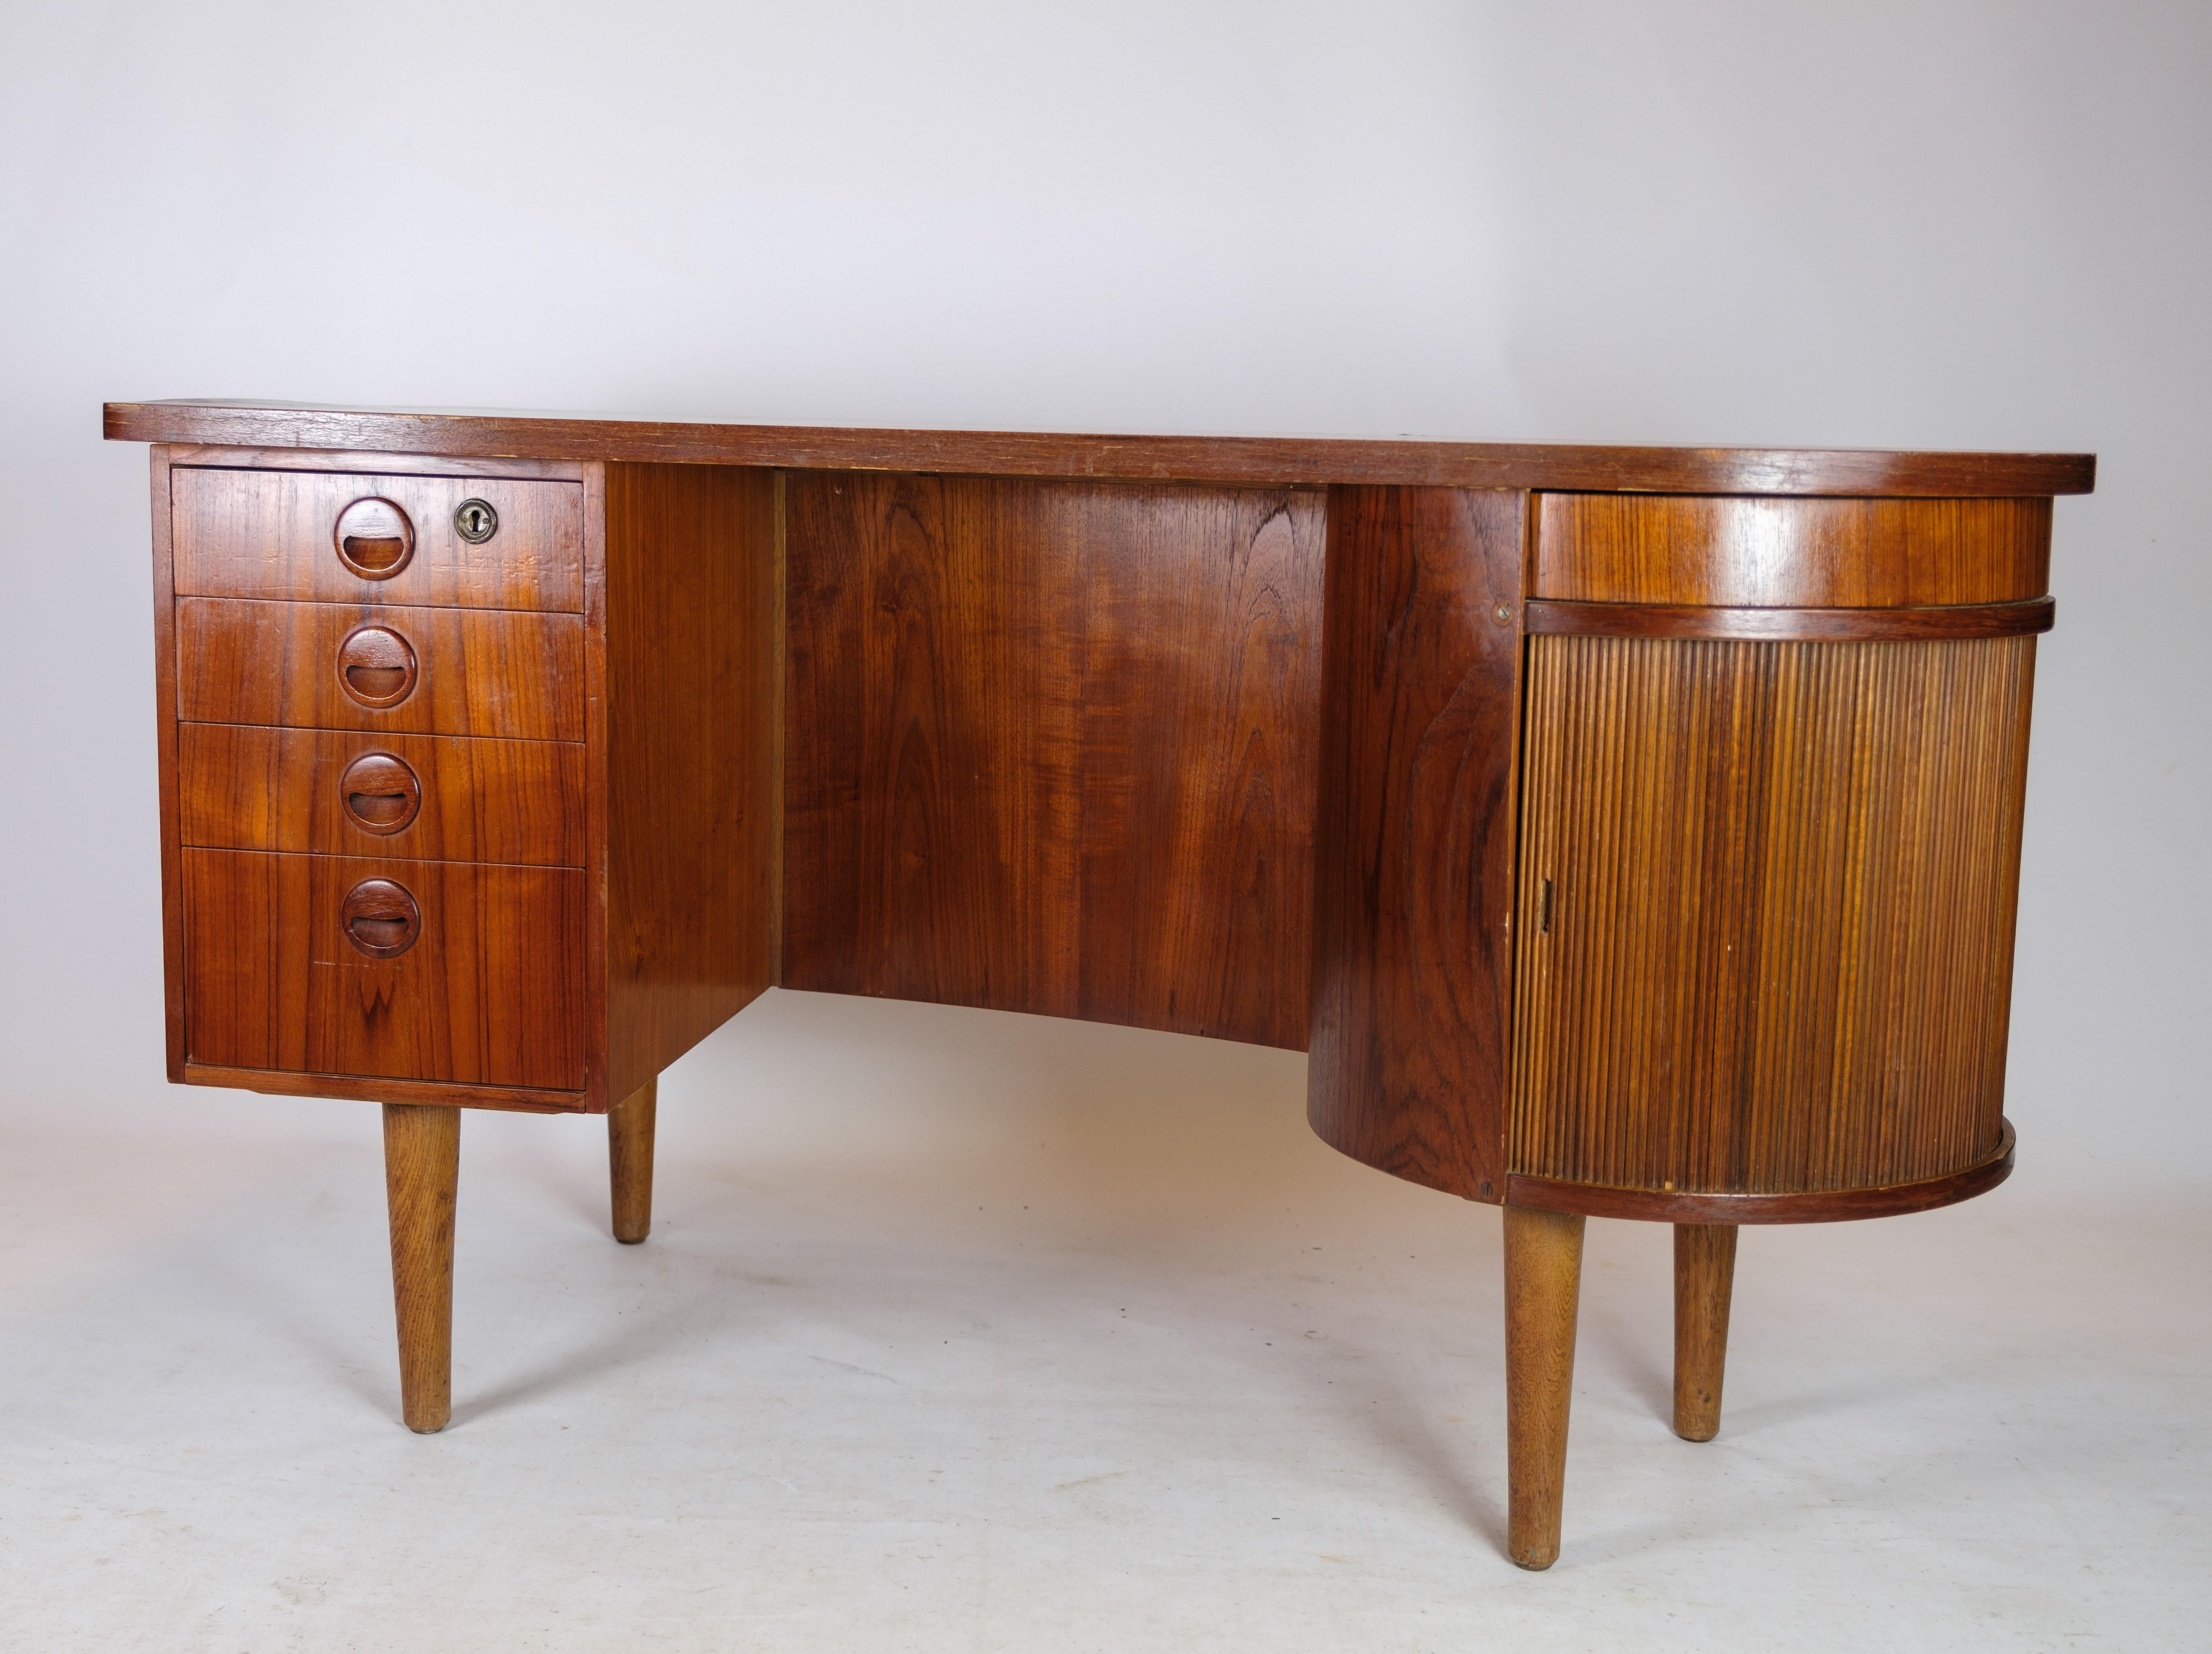 Desk in Teak wood model 54 by Kai Kristiansen and Feldballes furniture from 1954 For Sale 6